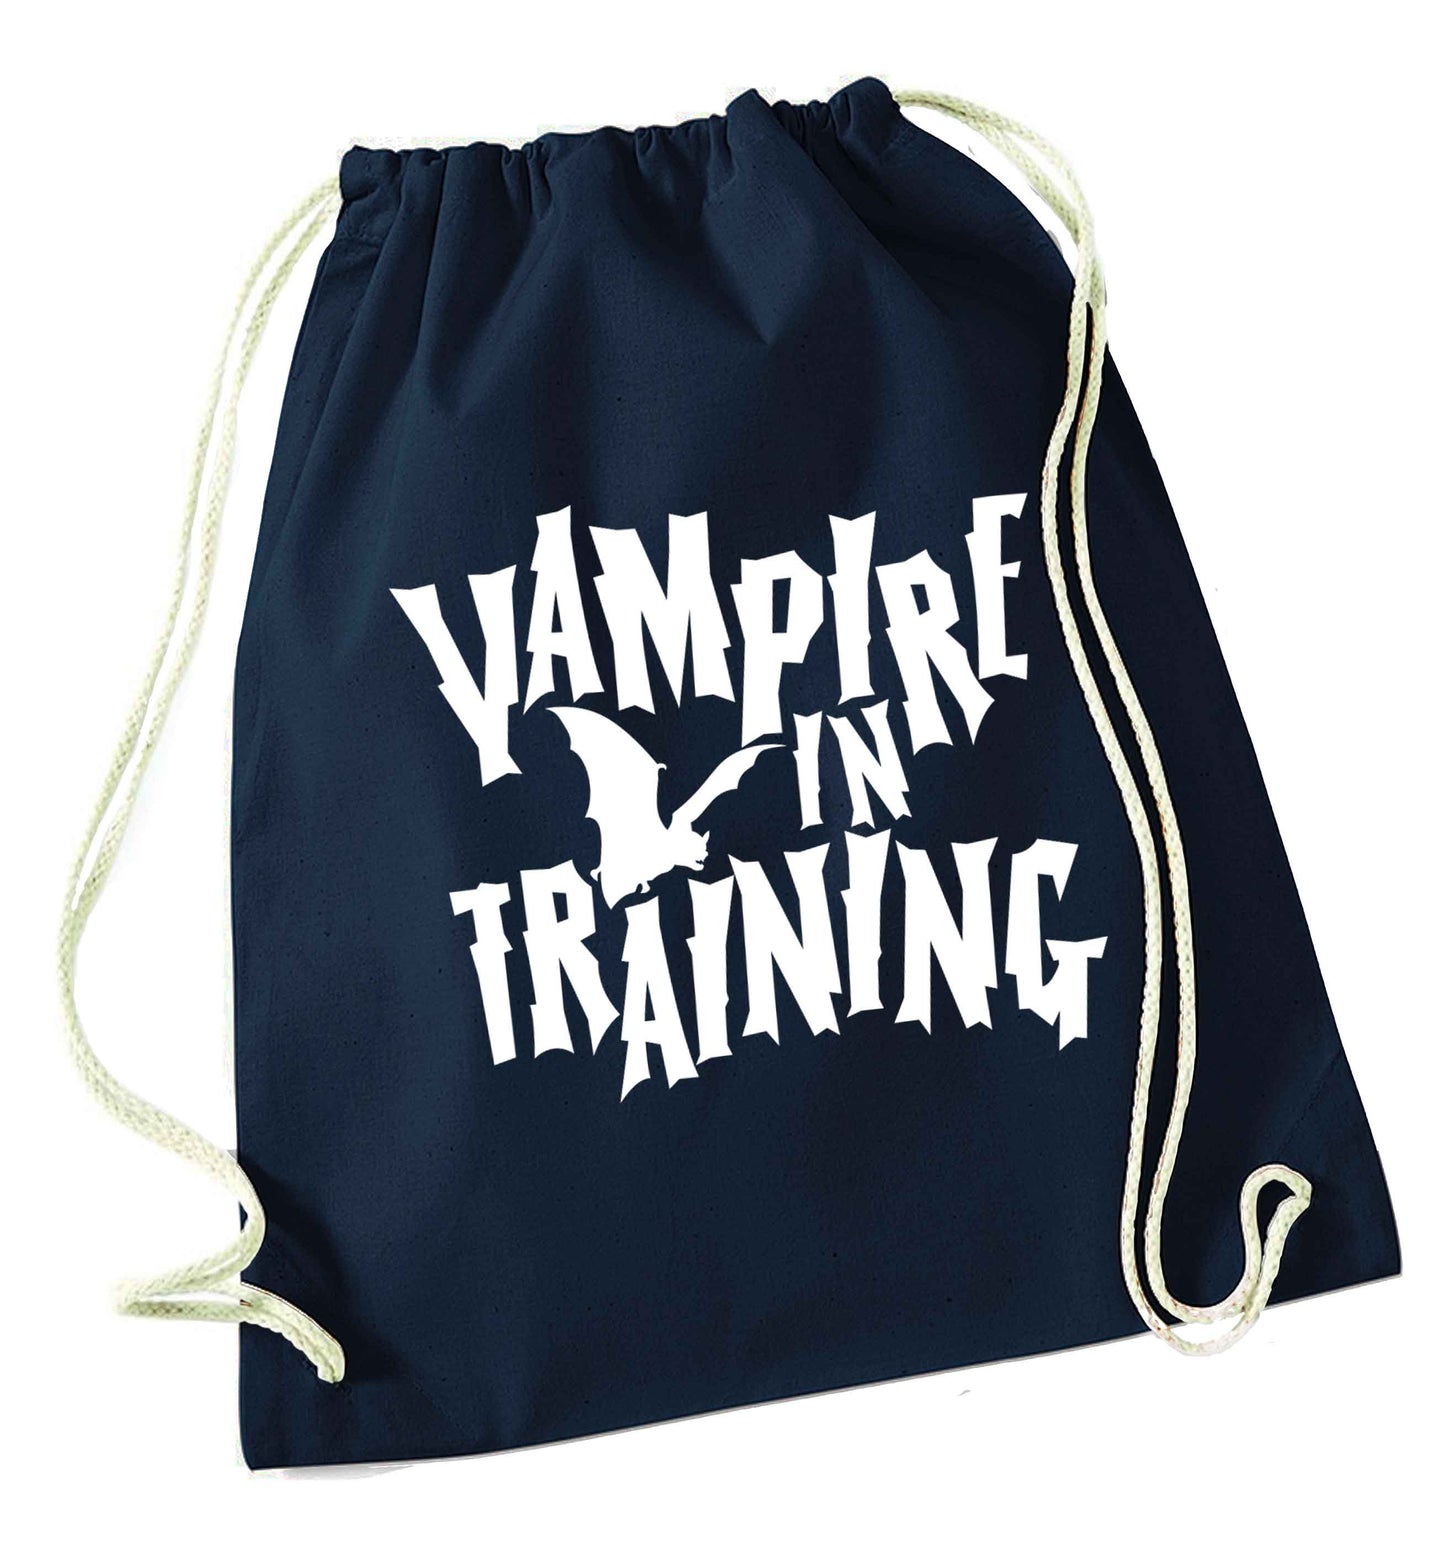 Vampire in training navy drawstring bag